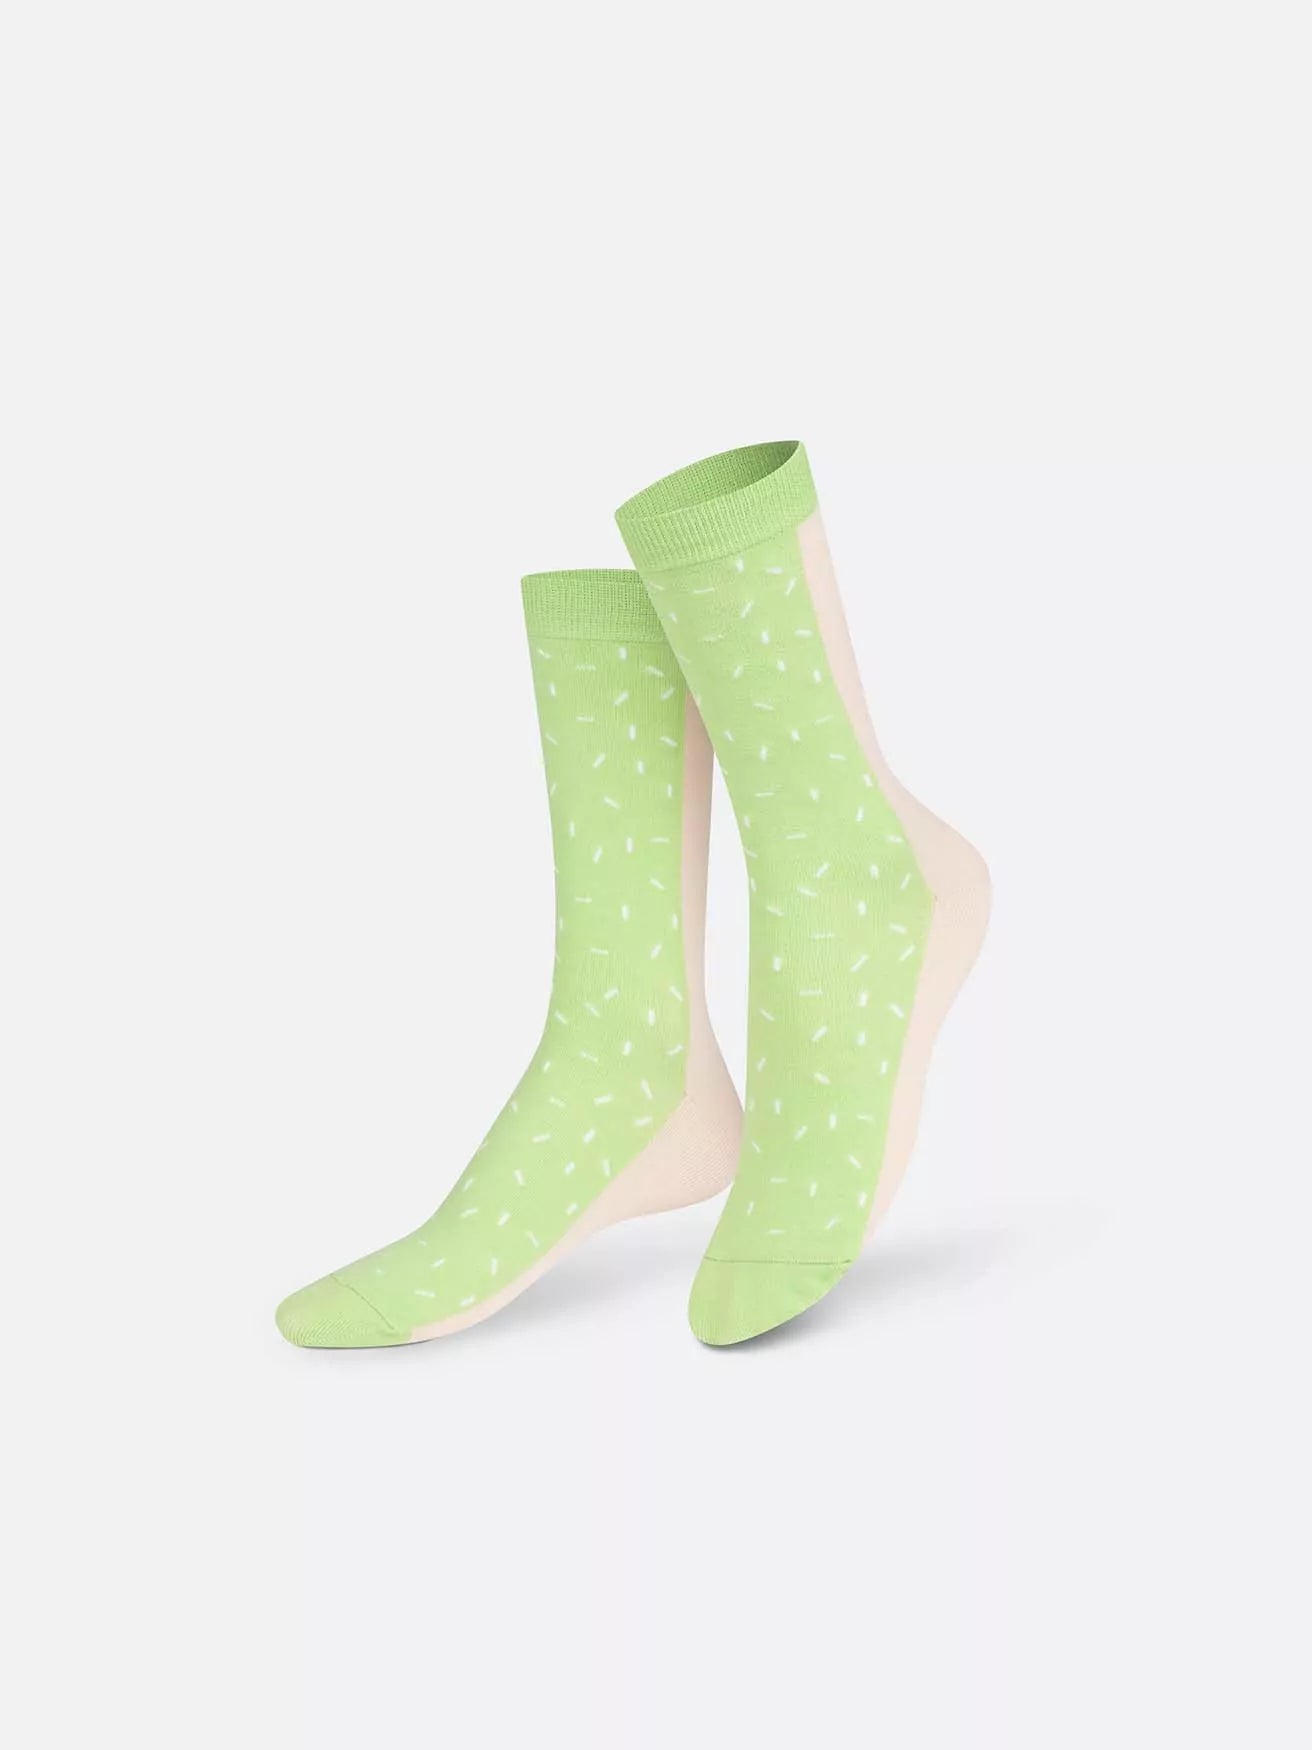 
                  
                    Ems Dolce Gelato Rosa Grüne Socken
                  
                